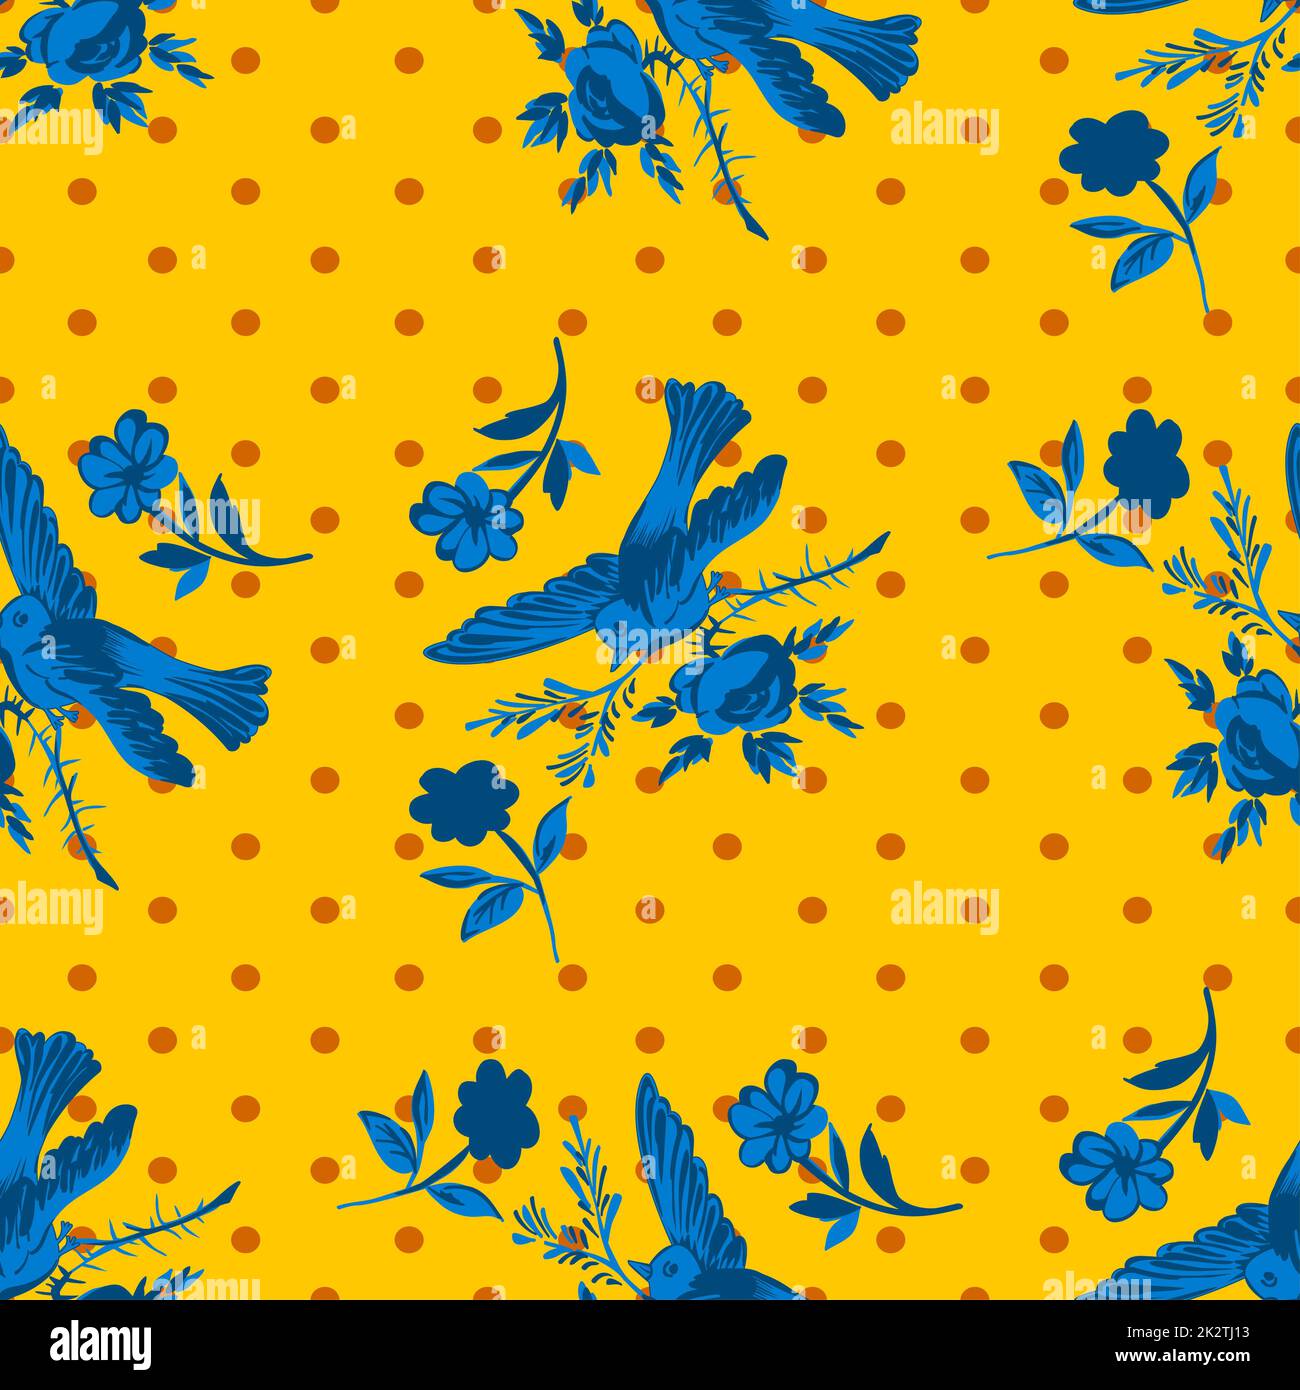 Handgezeichneter Vogel, der mit Blumenrosen auf einem Hintergrund mit Punktmuster fliegt. Nahtloser tropischer Vintage-Druck. Vektorbild für Design, Mode, Textil, Grußkarte, Einladung, Geschenkpapier Stockfoto